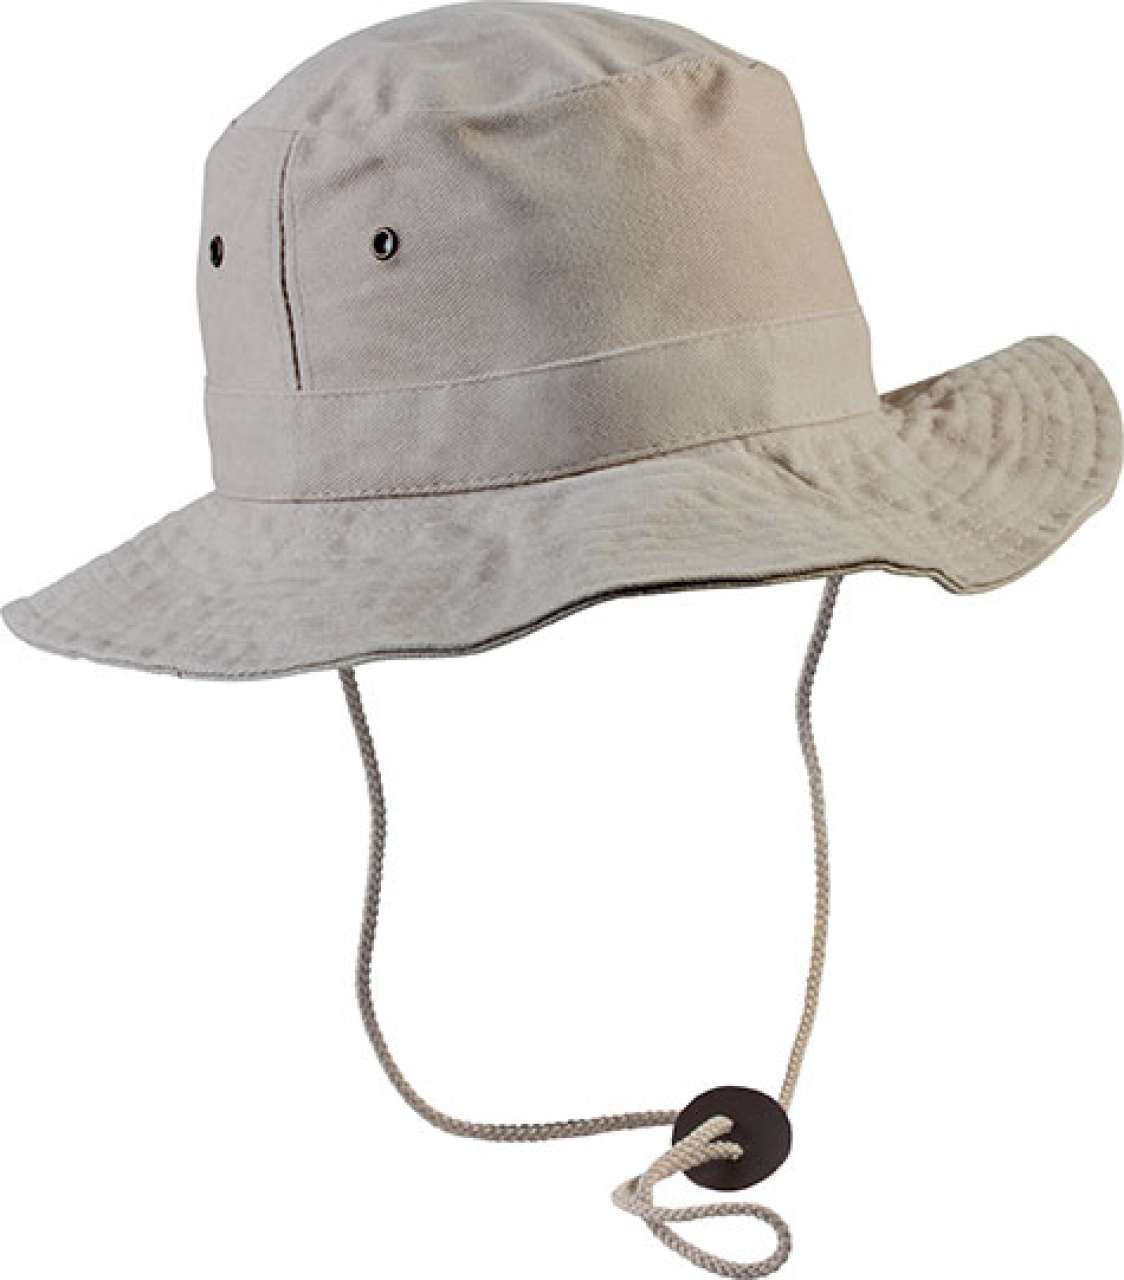 BAROUDEUR - ADVENTURE HAT